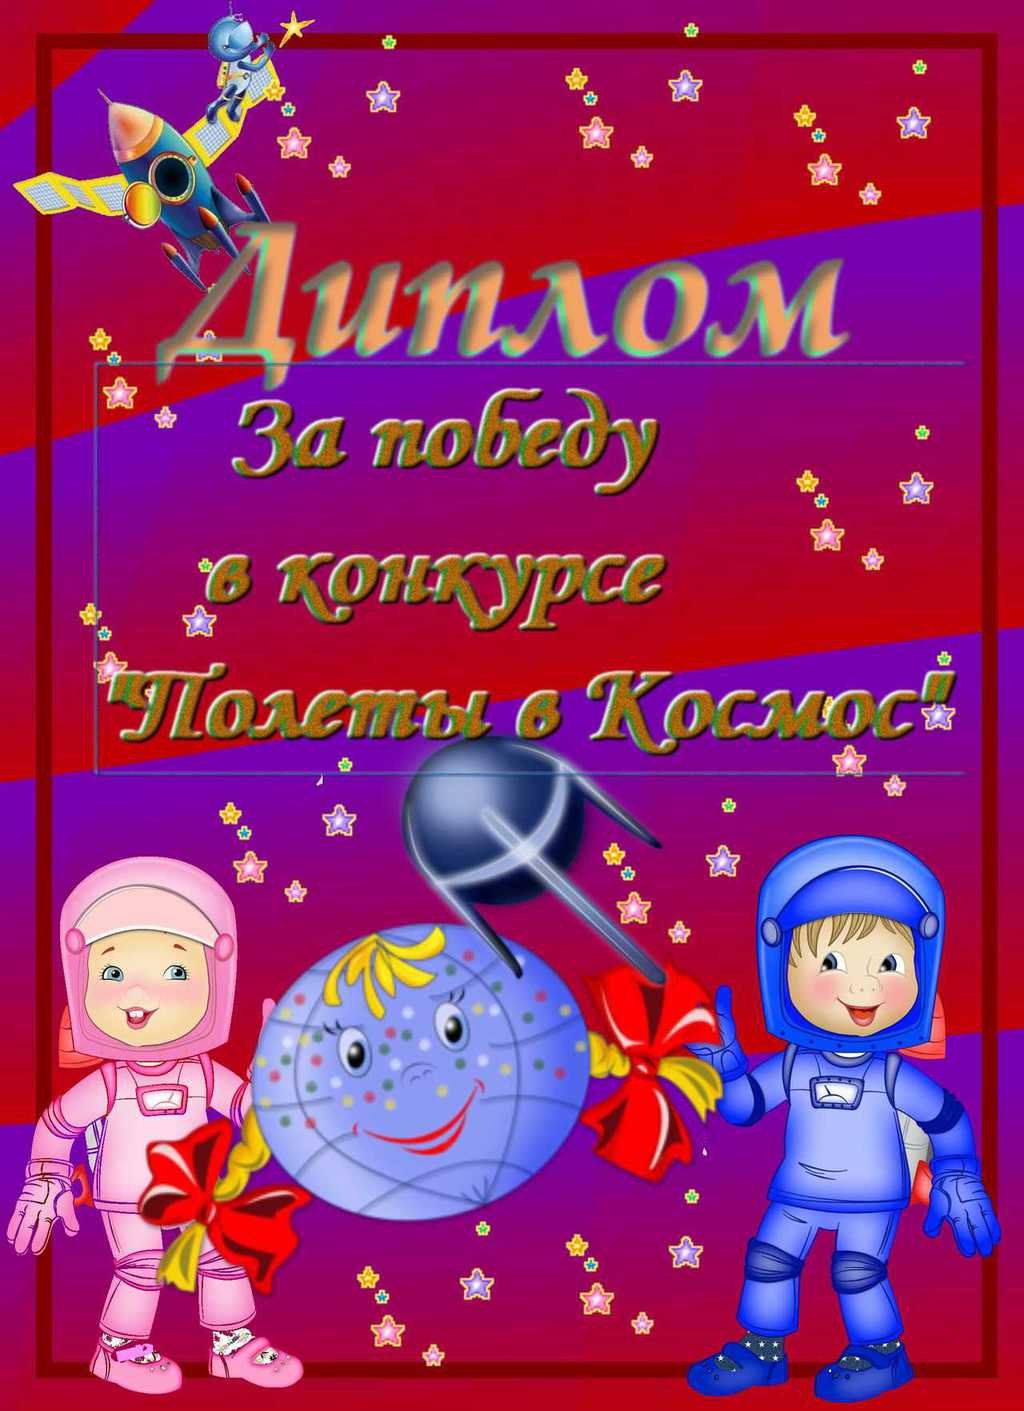 Объявления ко дню космонавтики в детском саду